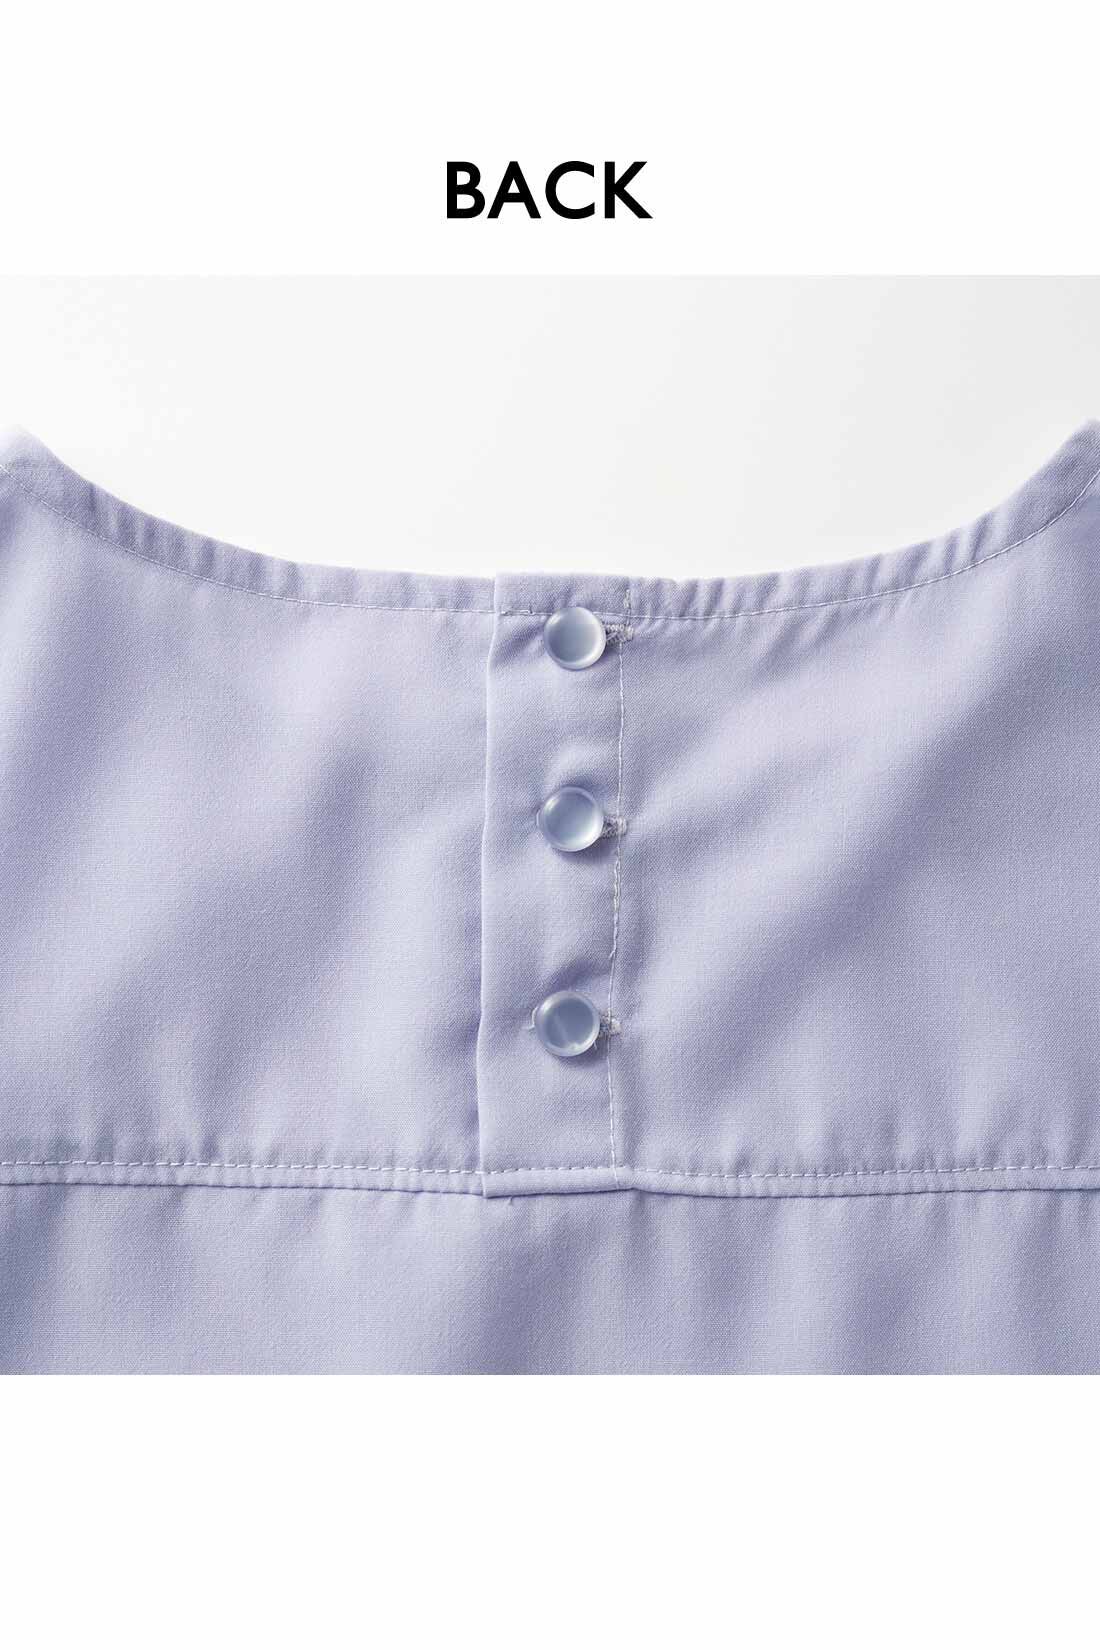 IEDIT|IEDIT[イディット]　ヴィンテージ風スパンローン素材のしわが気になりにくいシャツライクトップス〈ブラック〉|背中のボタンは、デザインポイントにも。ヨークでシャツのきちんと感もプラス。　※お届けするカラーとは異なります。